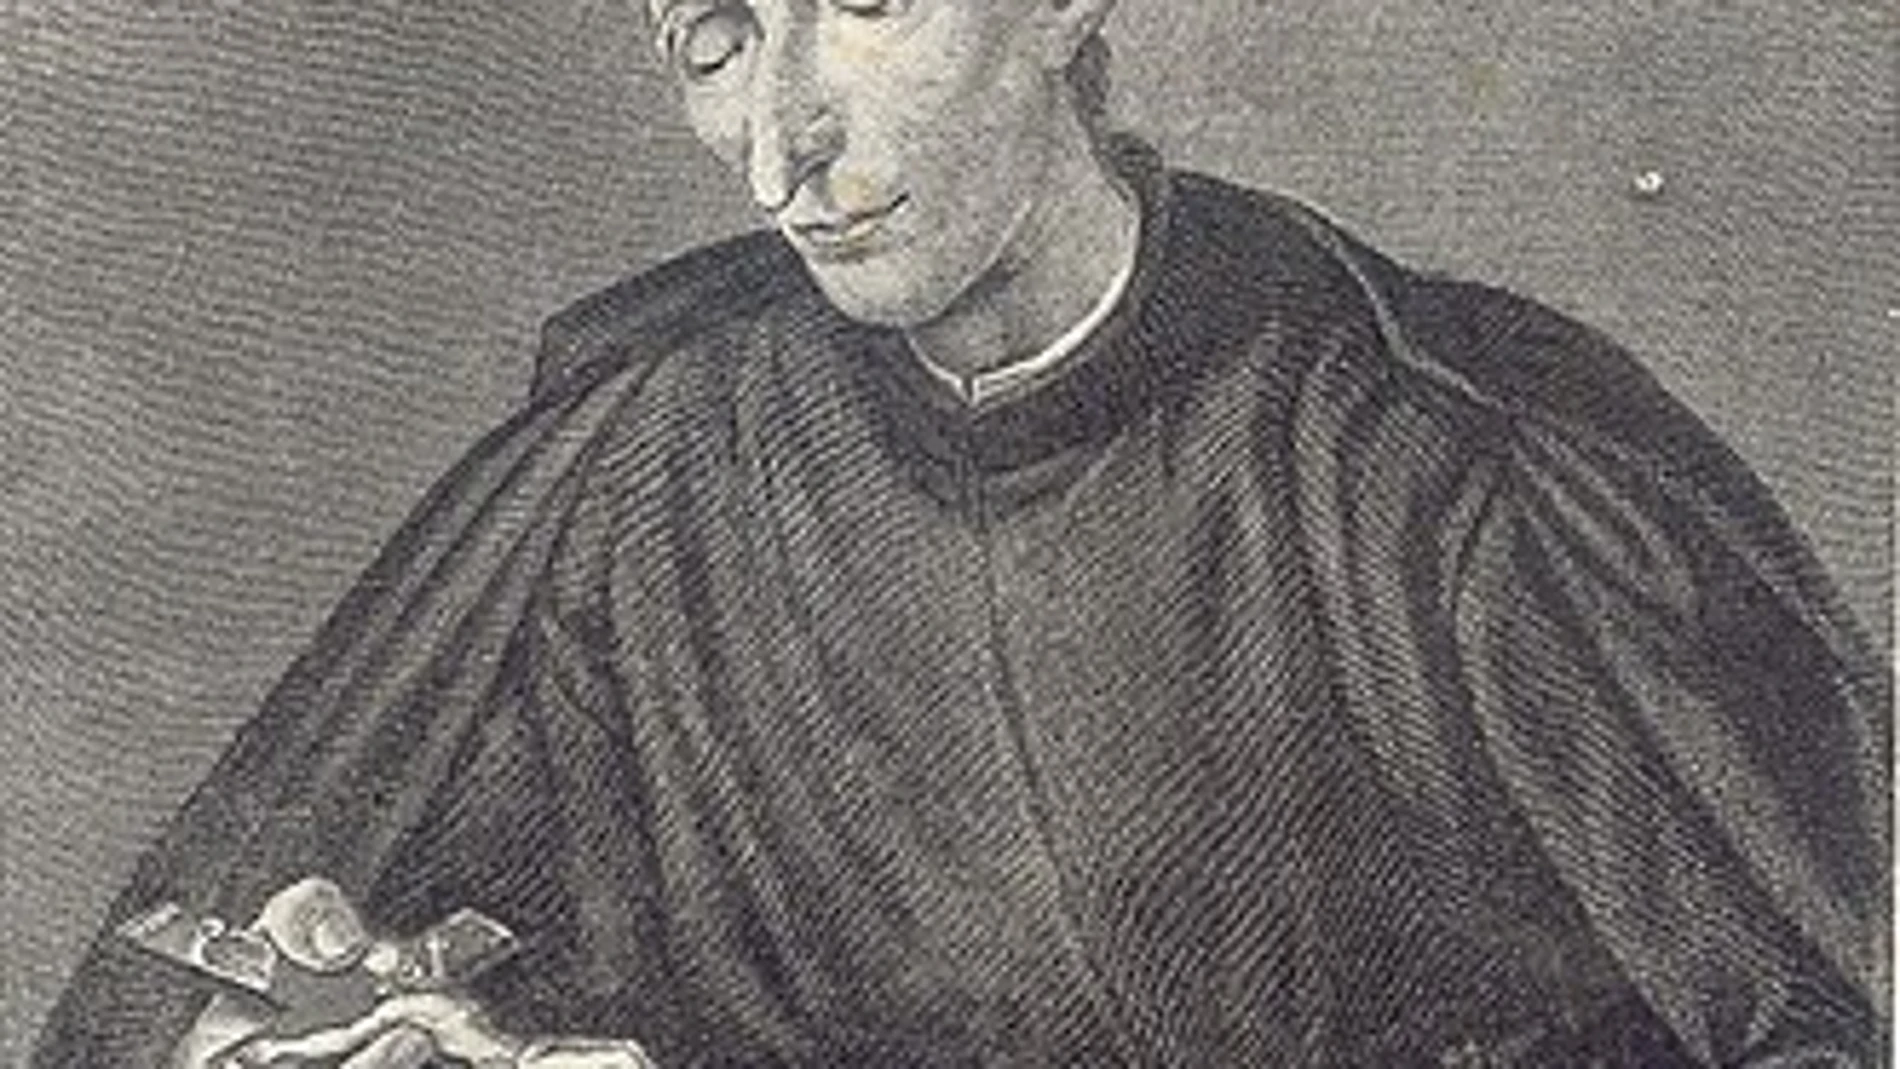 Retrato de San José Pignatelli, restaurador de la Orden de Jesuítas